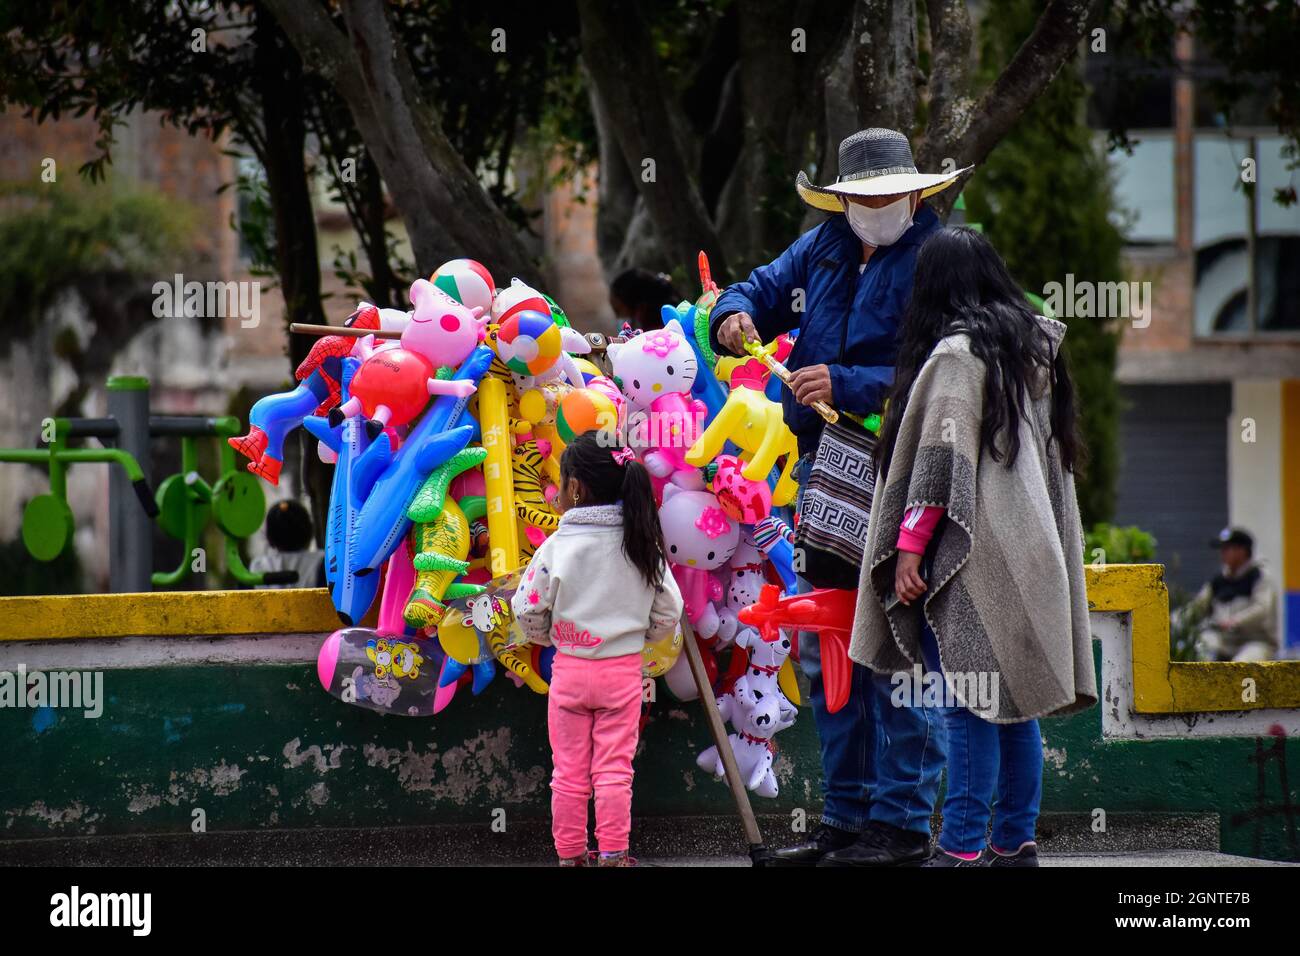 Eine Mutter und ihre Tochter kaufen am 15. August 2021 Gummiballons und Spielzeug bei einem Straßenhändler in Cumbal - Nariño, Kolumbien. Stockfoto